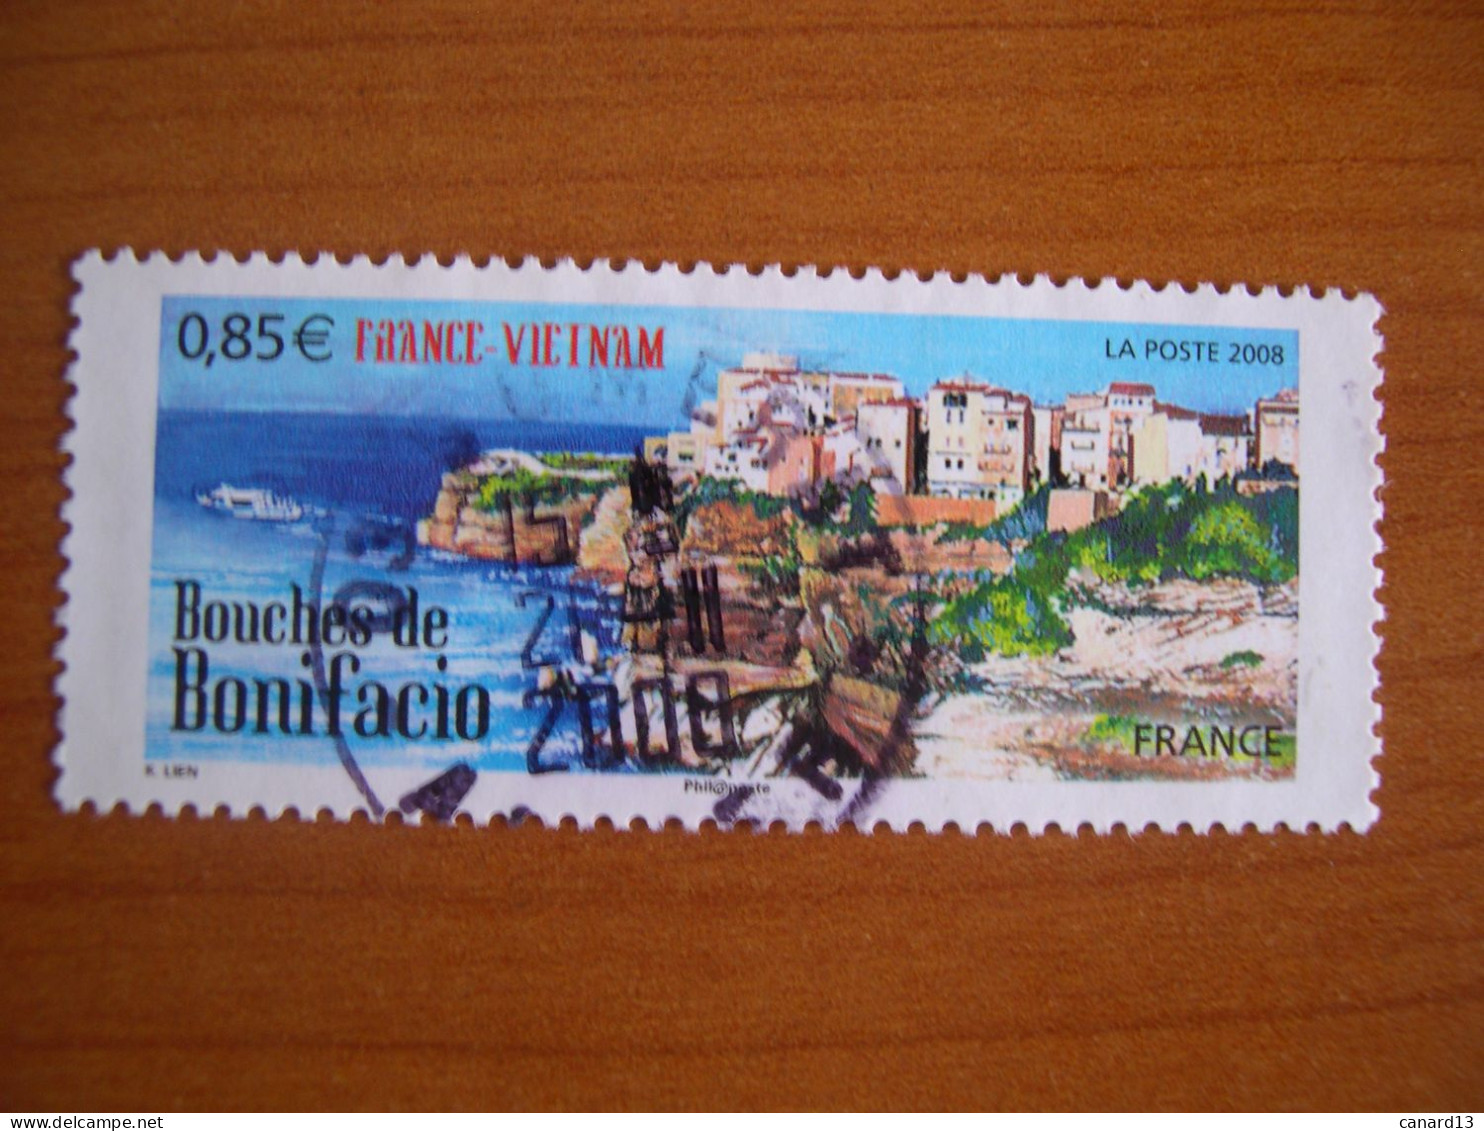 France Obl   N° 4285 Cachet Rond Noir - Used Stamps